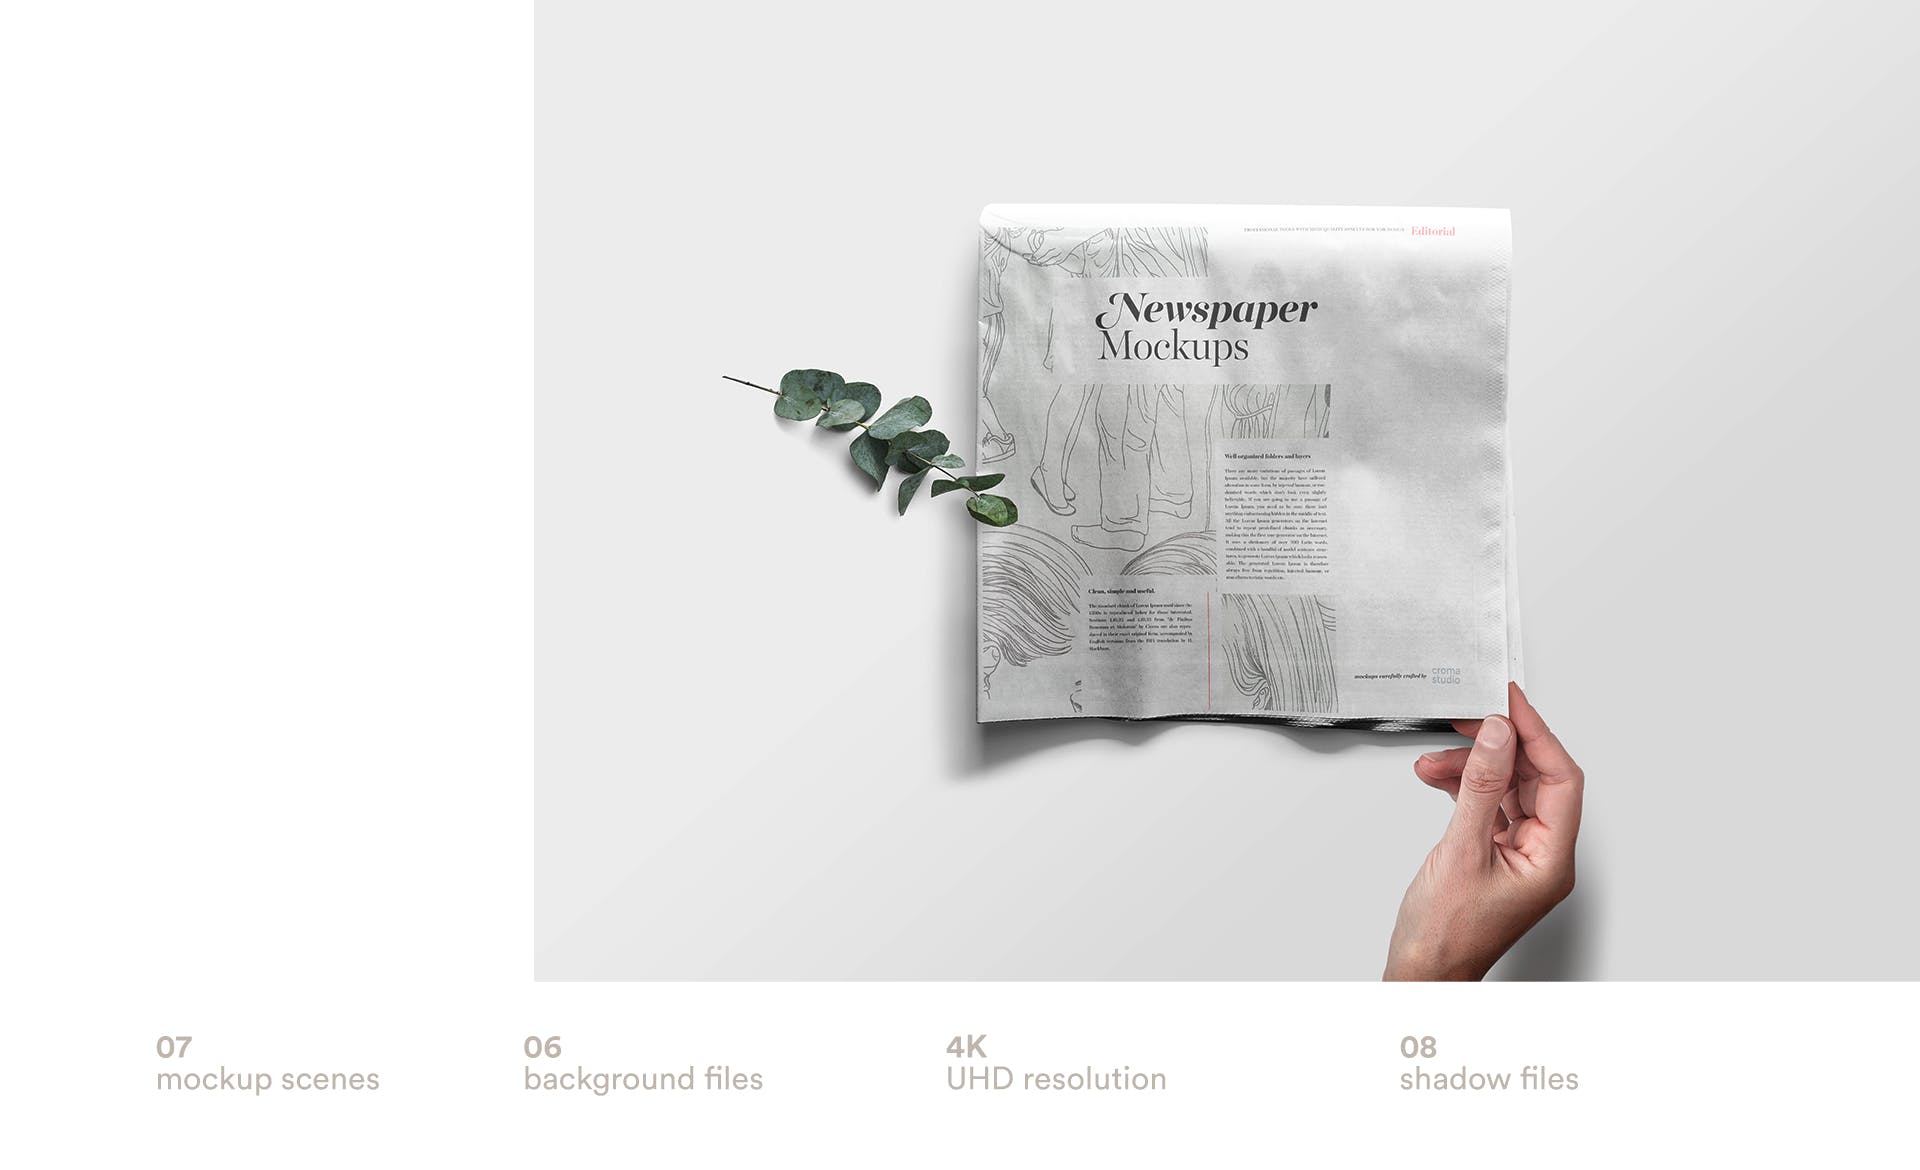 报纸版式设计排版效果图展示样机模板 Newspaper Mockup Templates插图2